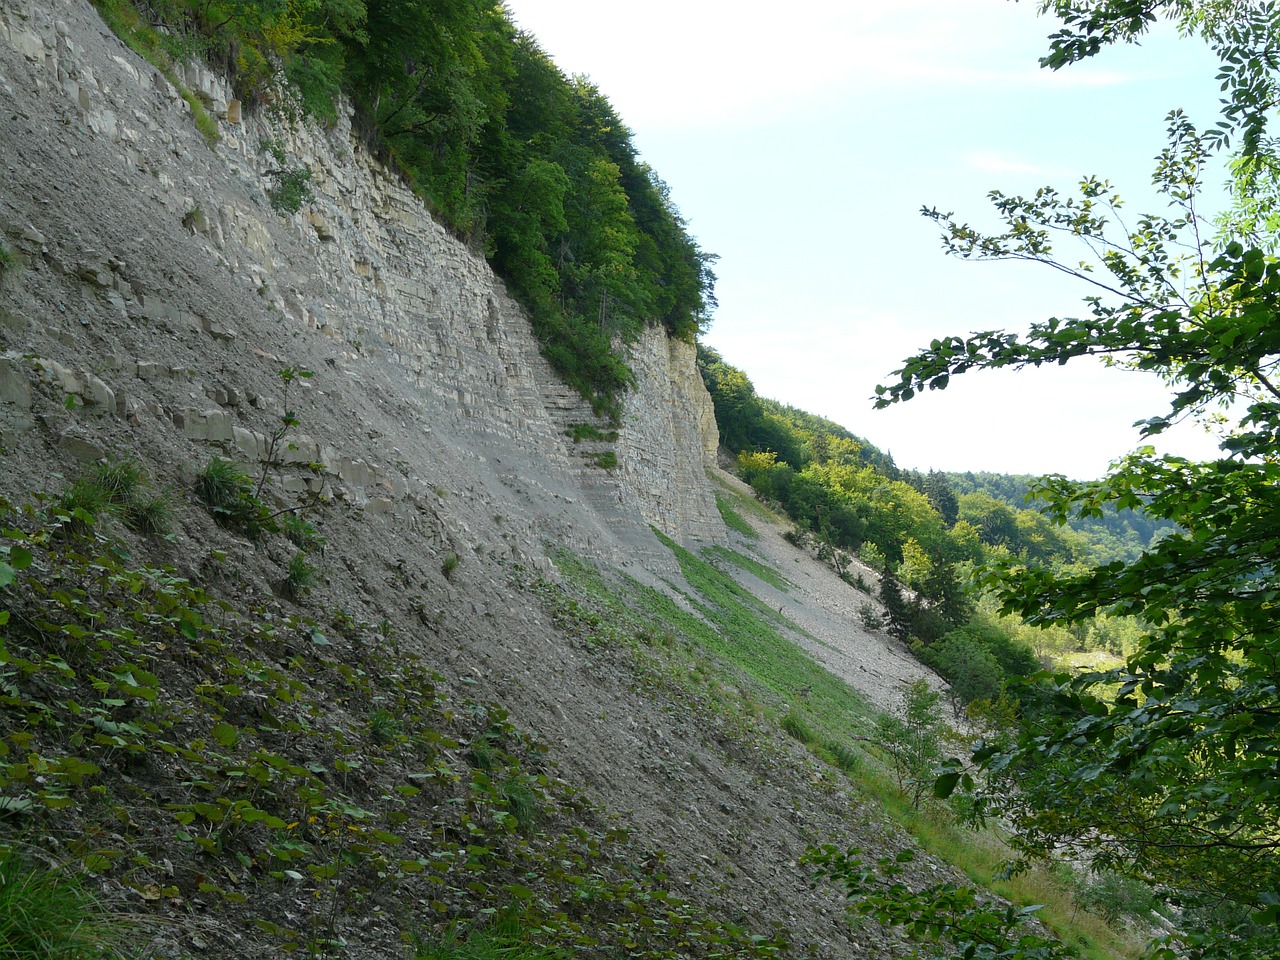 Landslide Picture